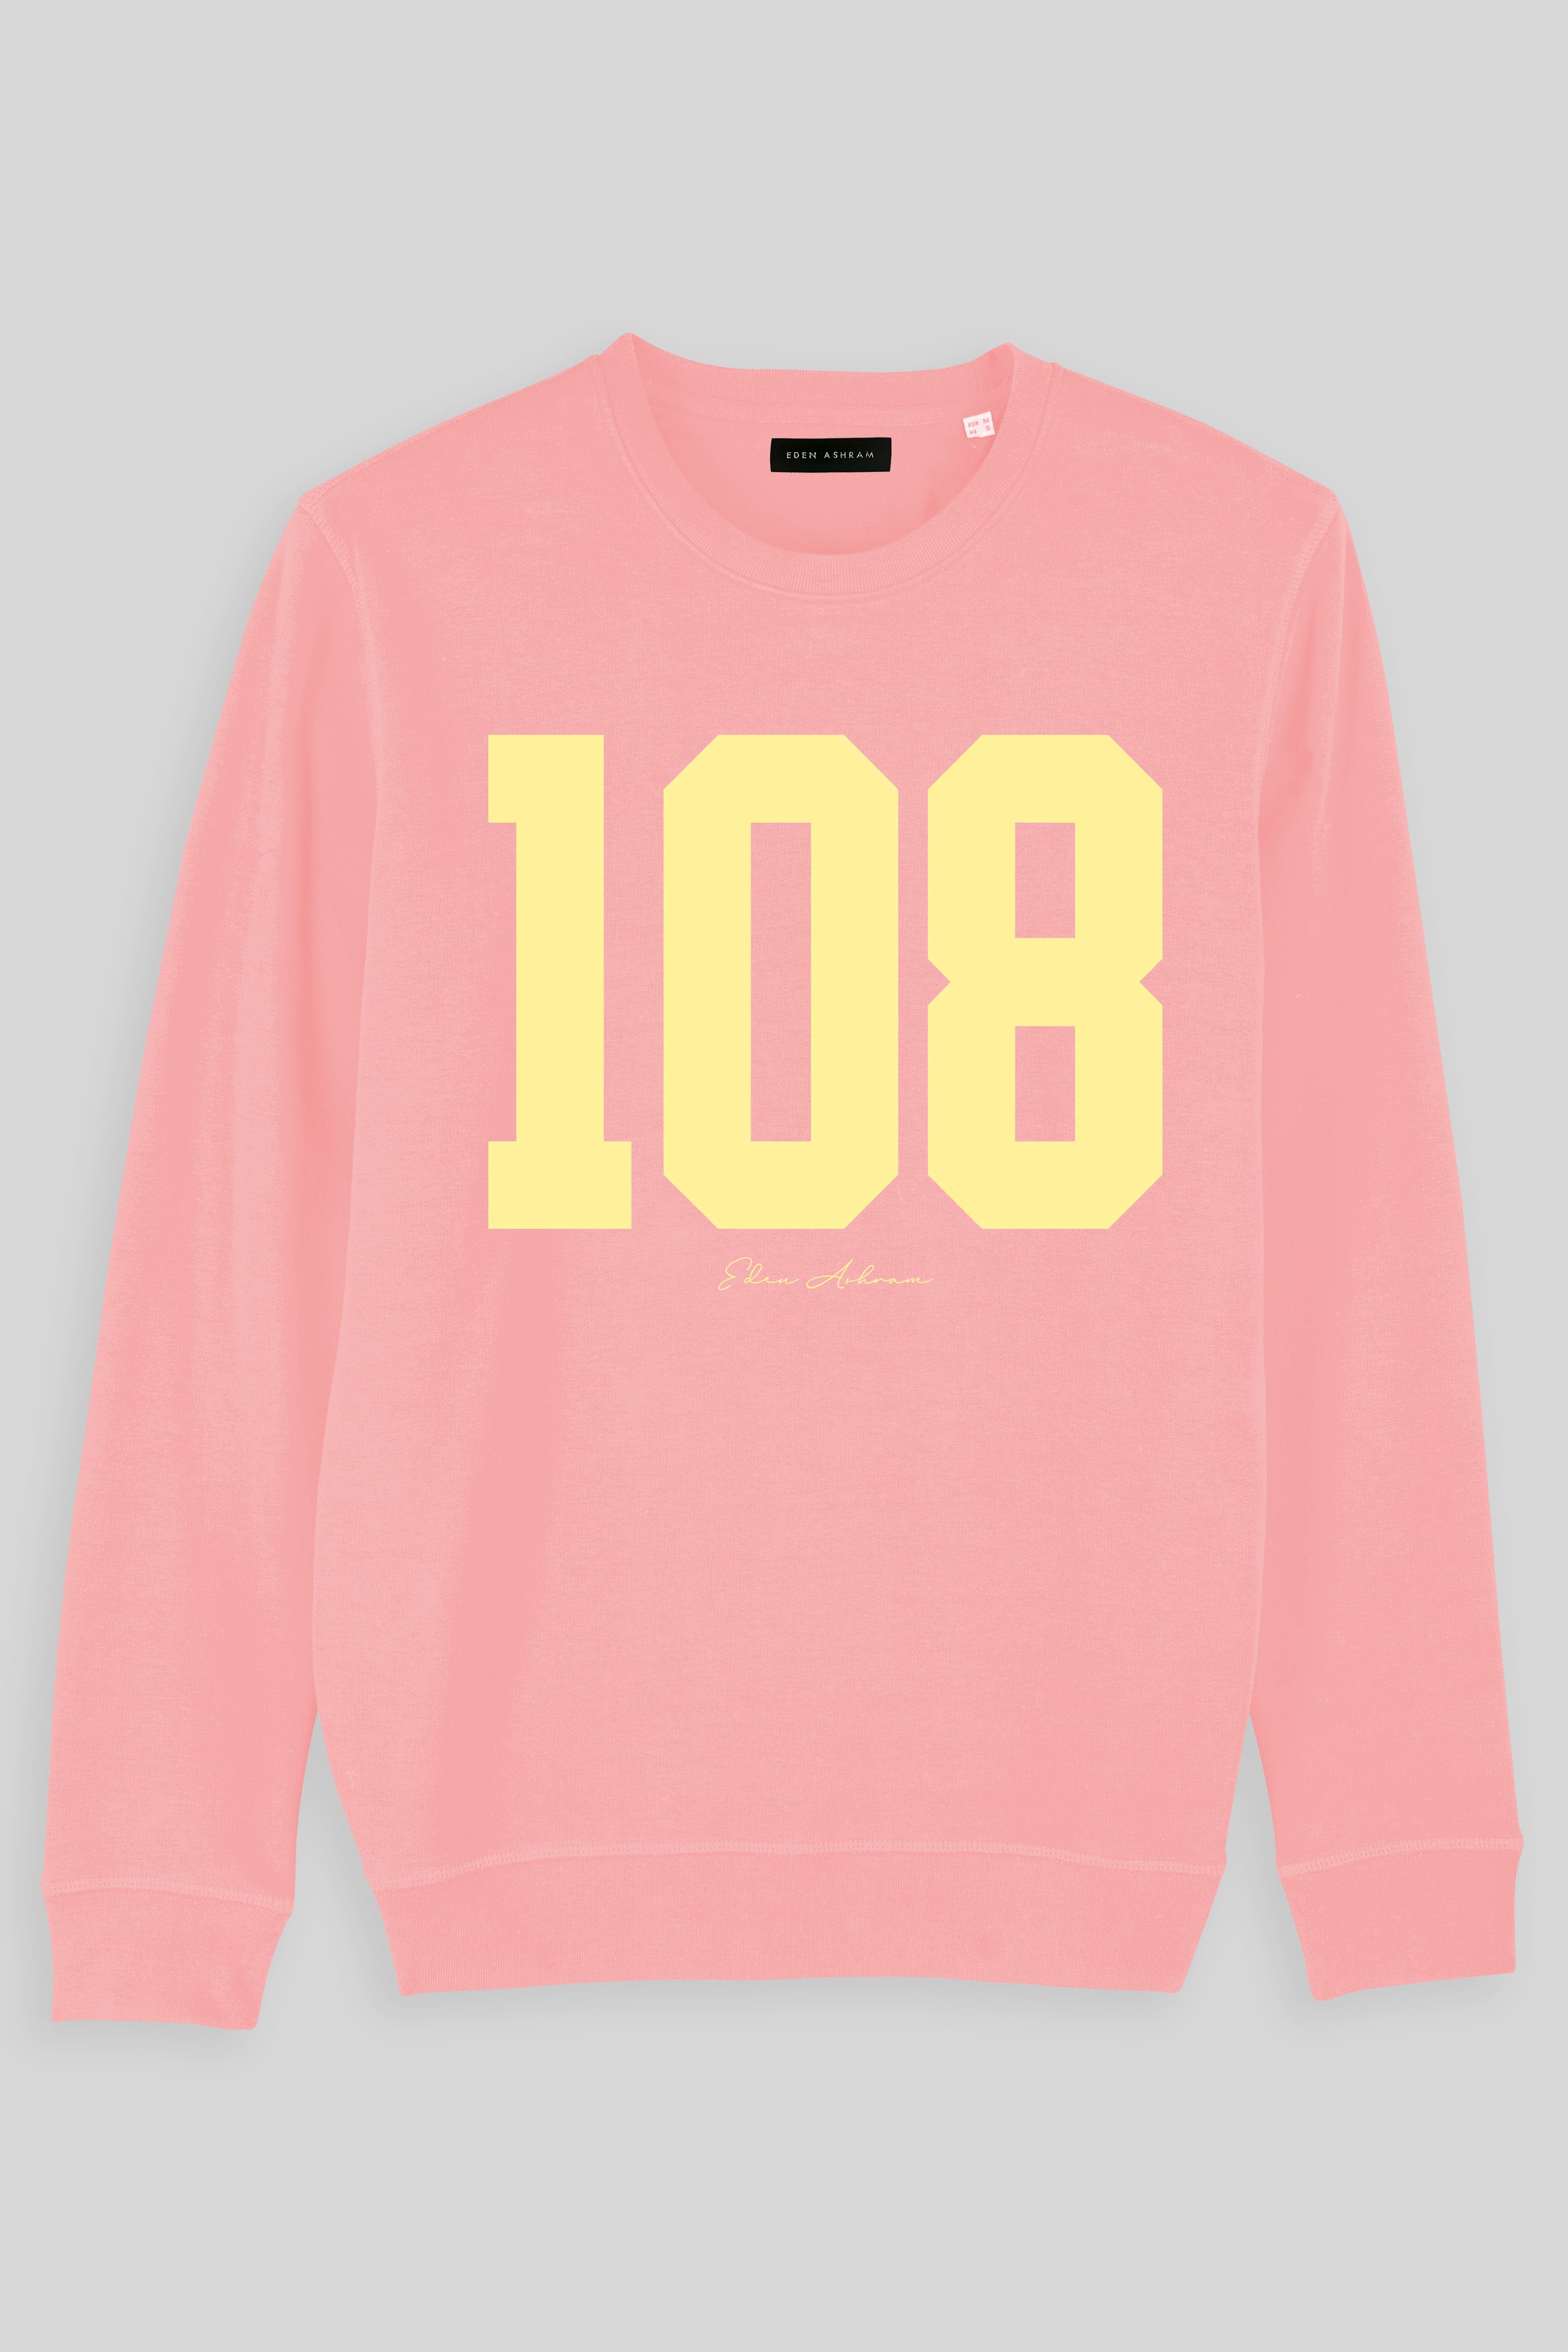 Eden Ashram 108 Premium Crew Neck Sweatshirt Coral Pink